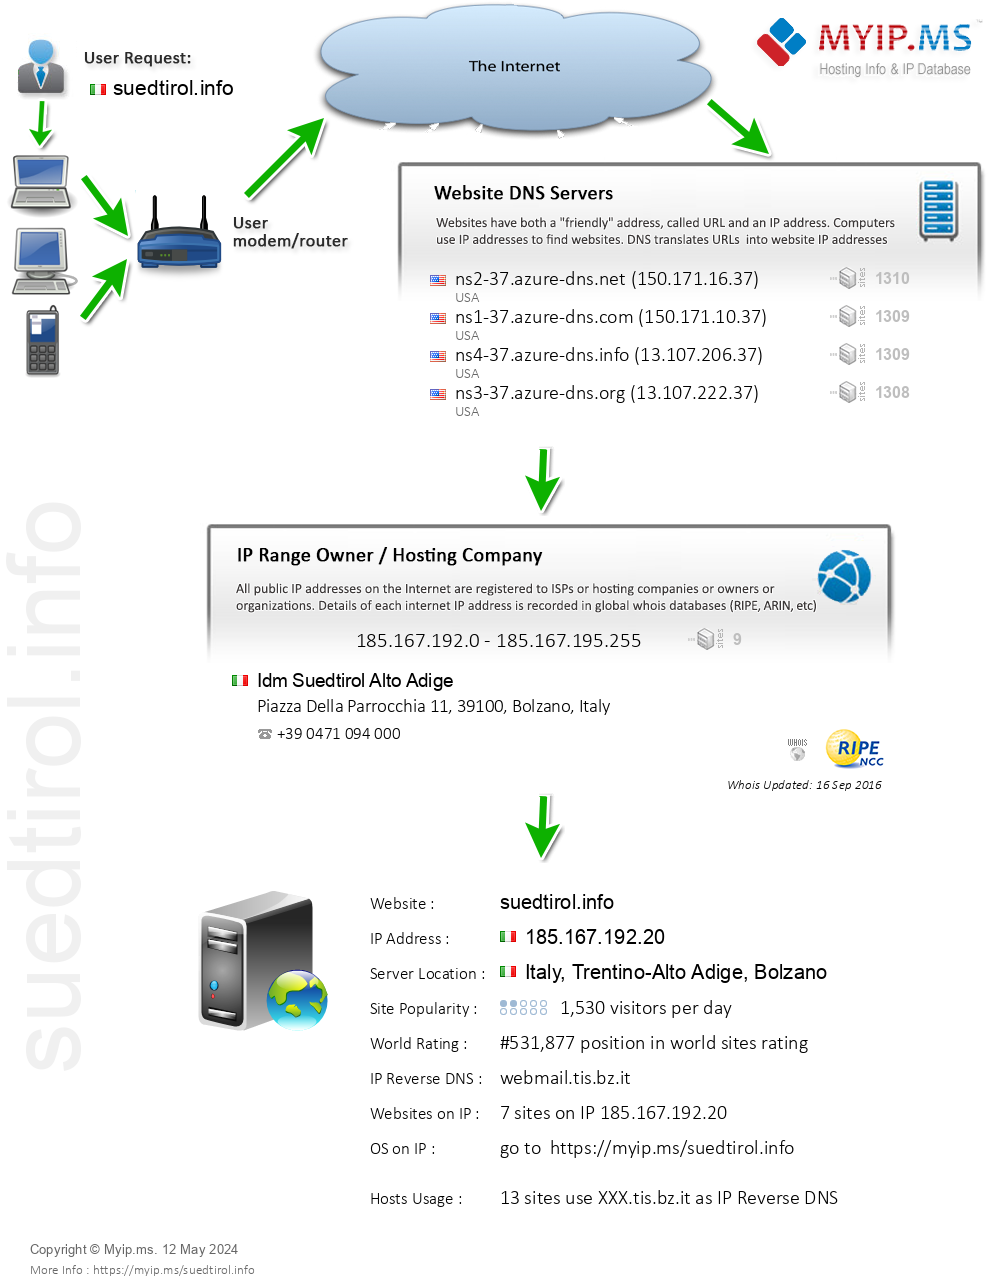 Suedtirol.info - Website Hosting Visual IP Diagram